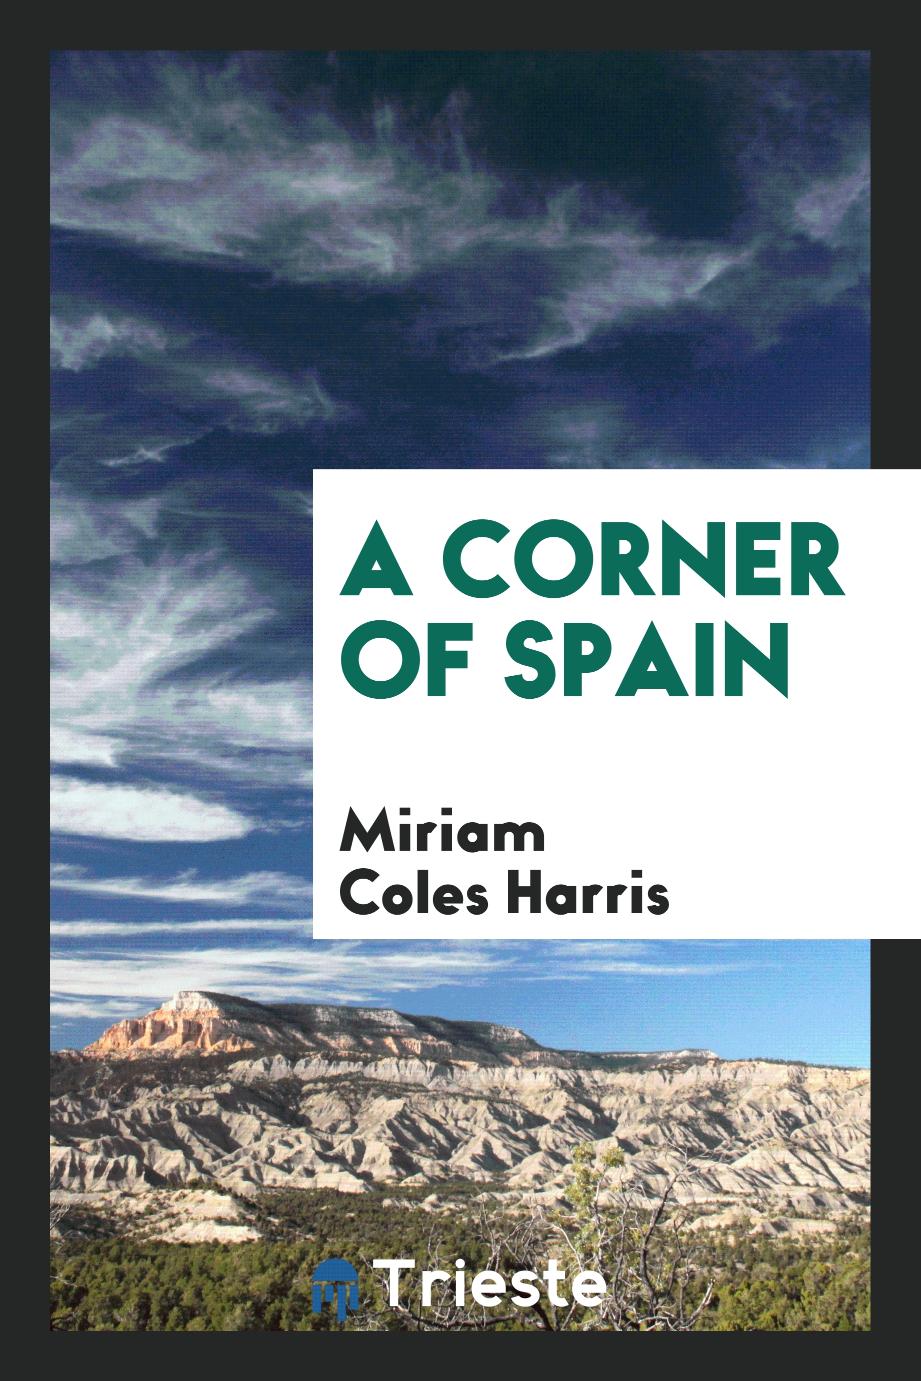 A corner of Spain